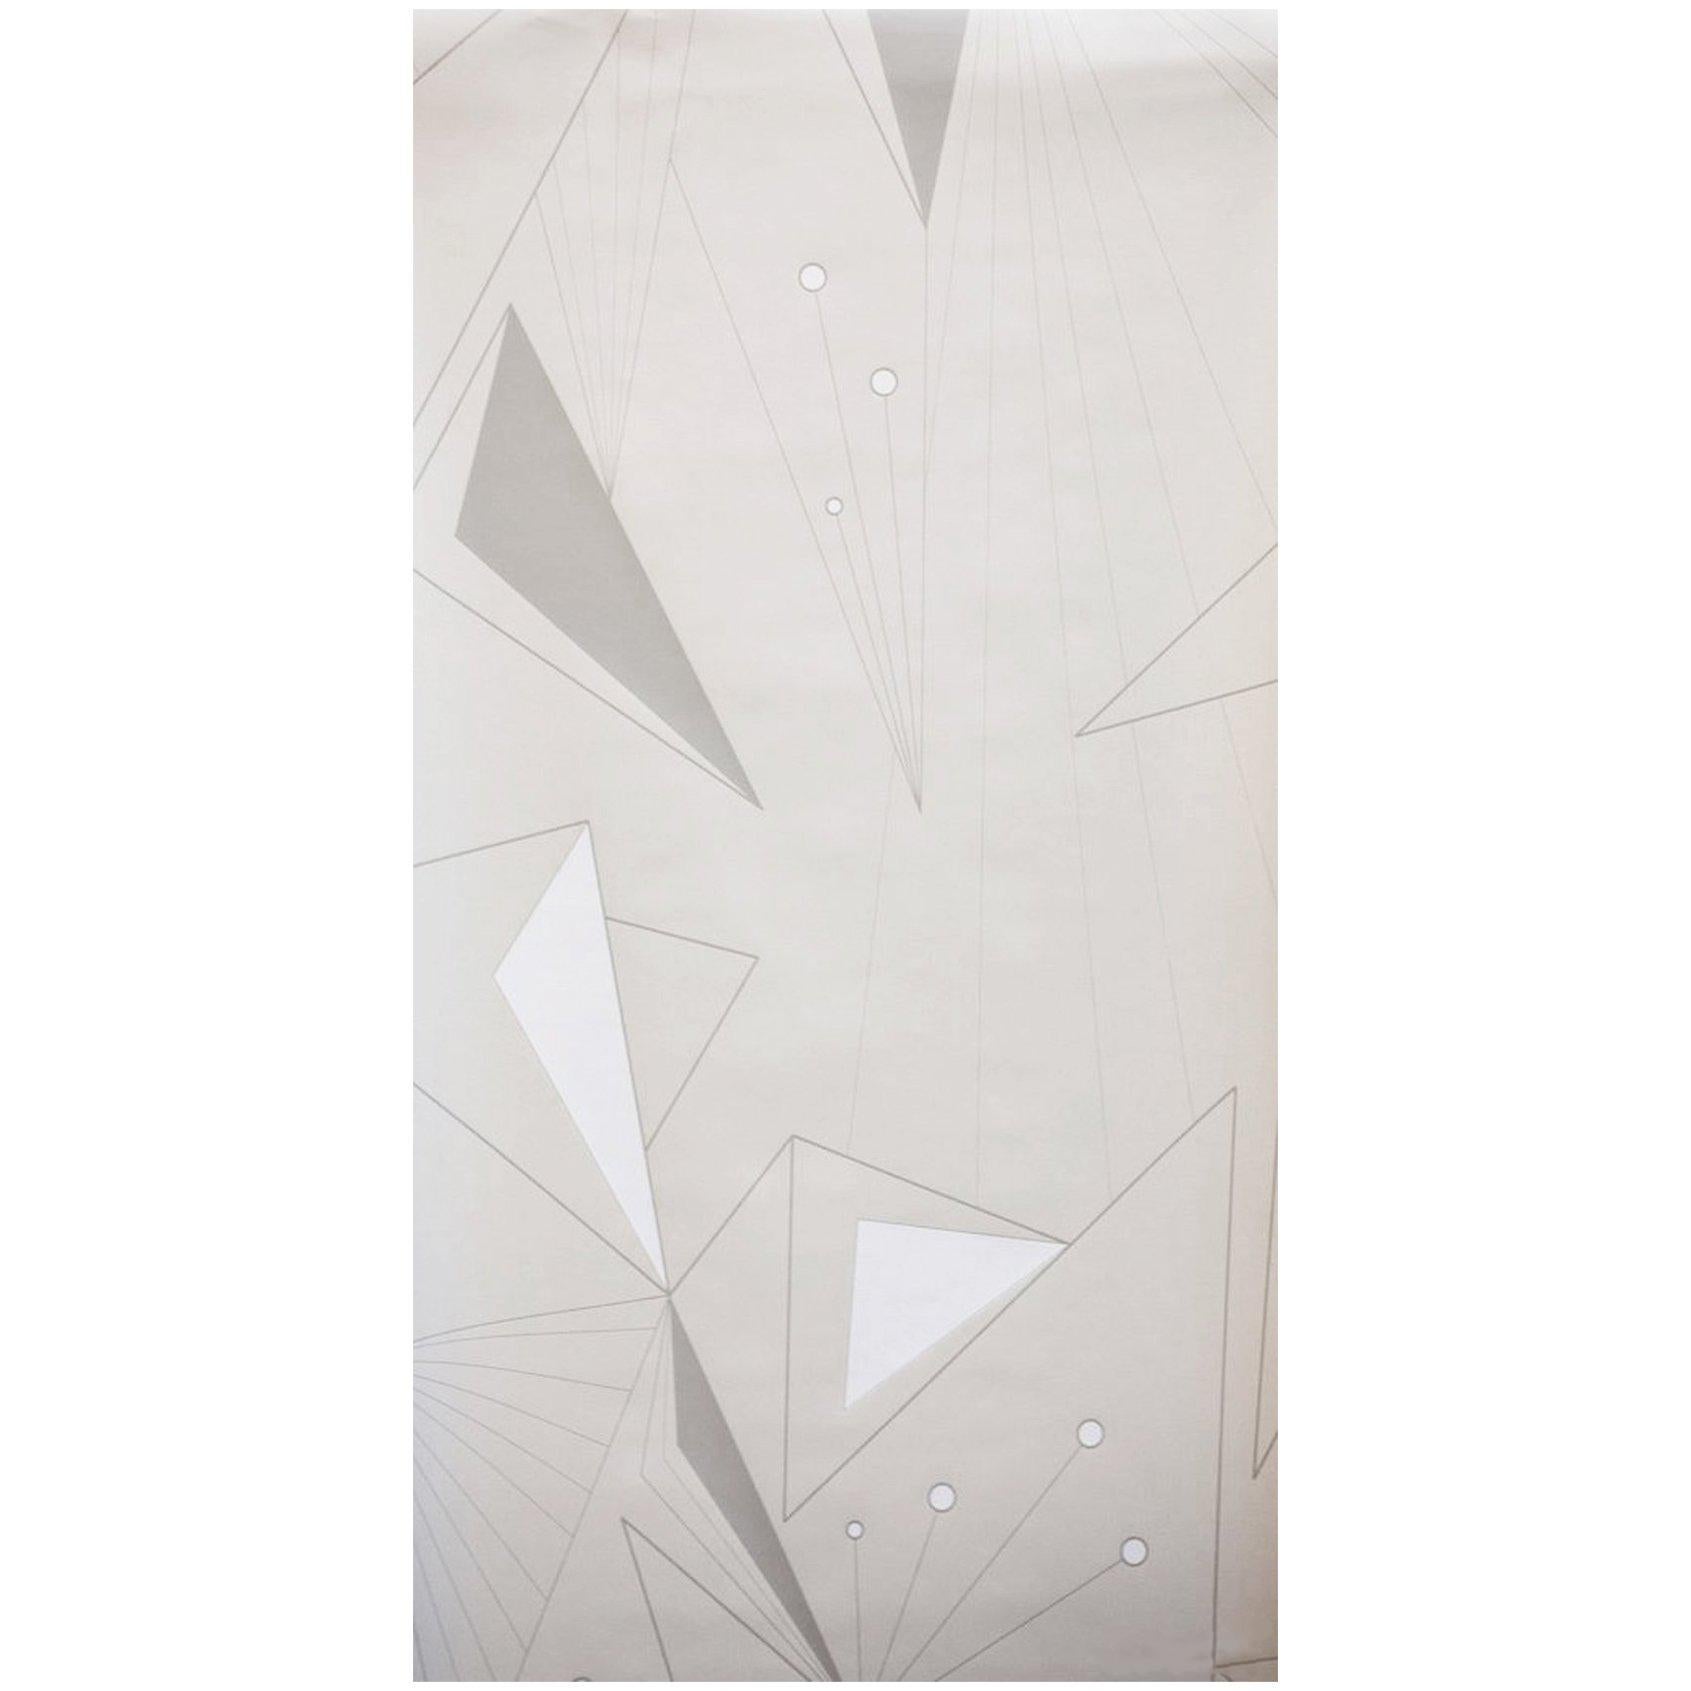 Art Deco Prisma-Raumteiler bedruckte Tapeten in Schnee, Stein, Weiß